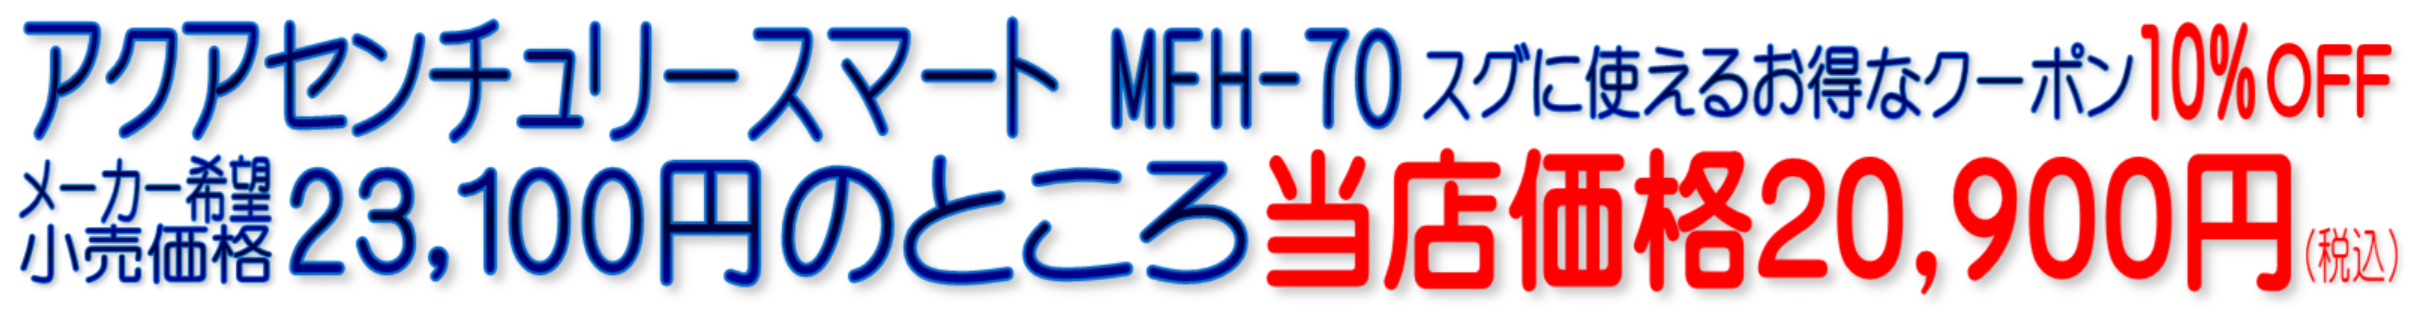 アクアセンチュリースマート MFH-70